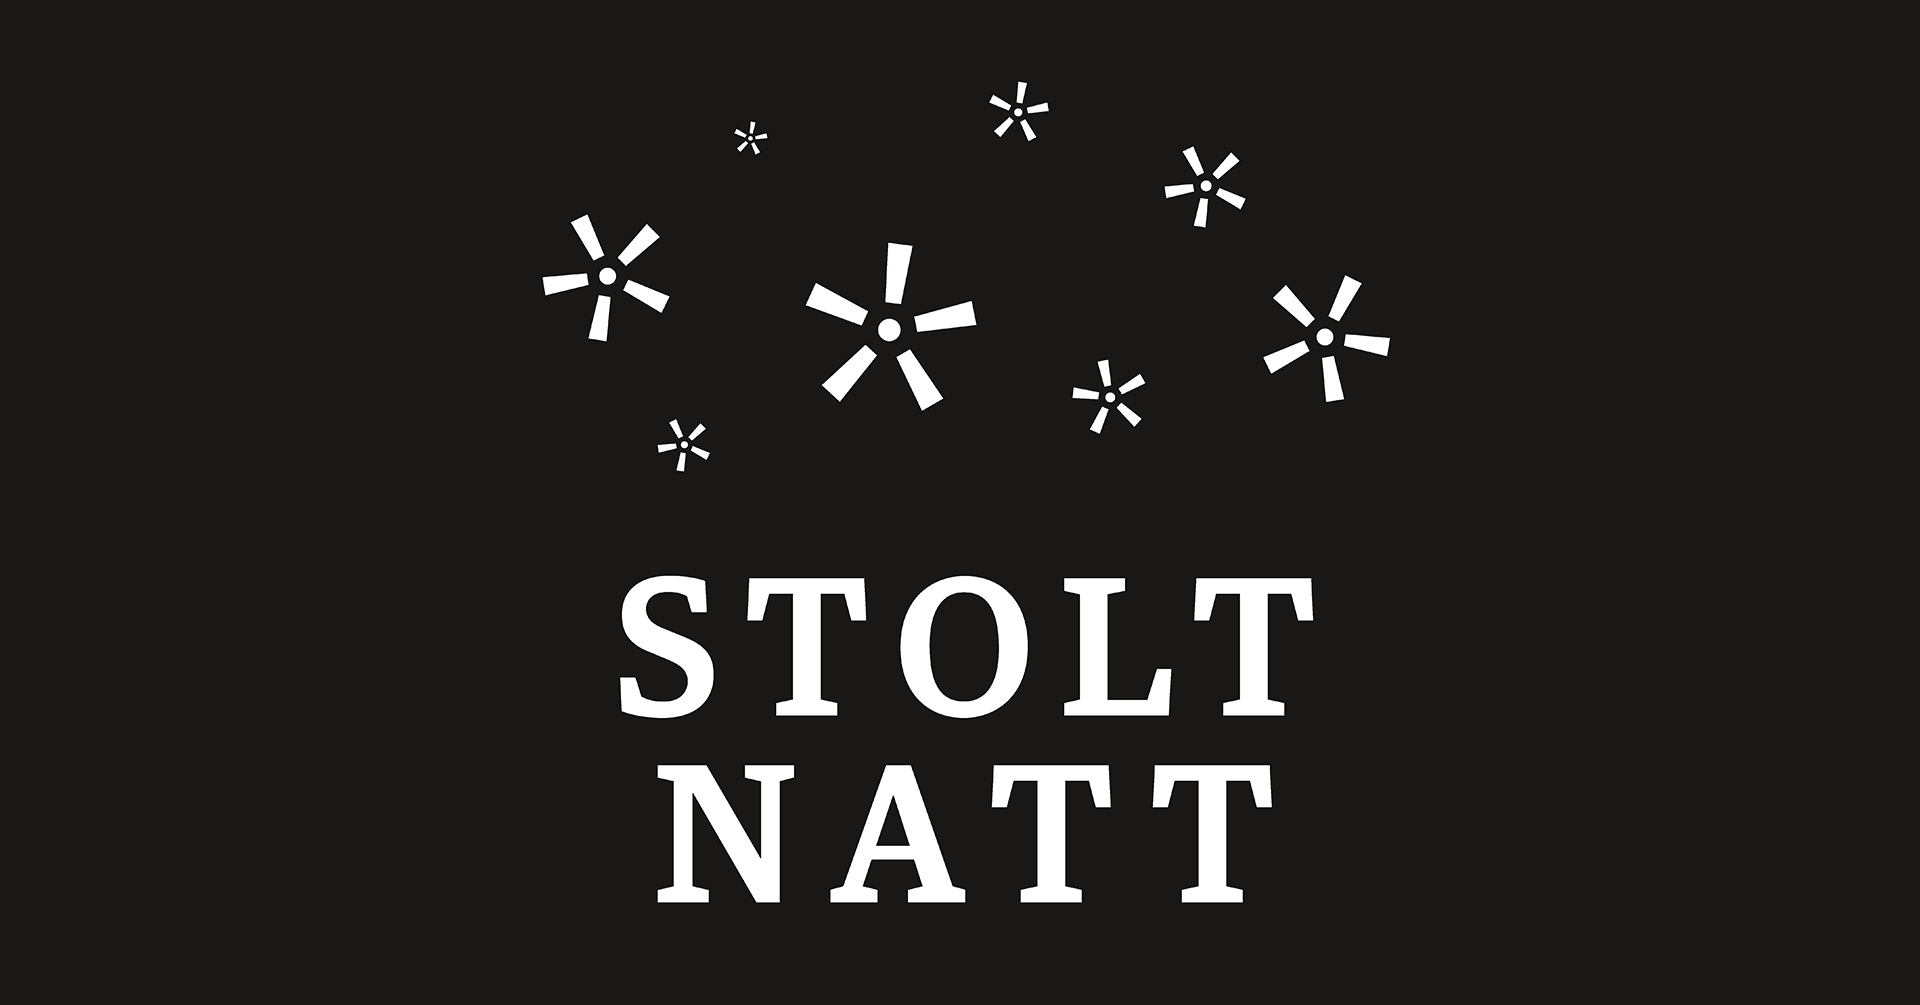 Logoen til Stolt natt med svart bakgrunn, hvit skrift og stjerner formet som utropstegn.